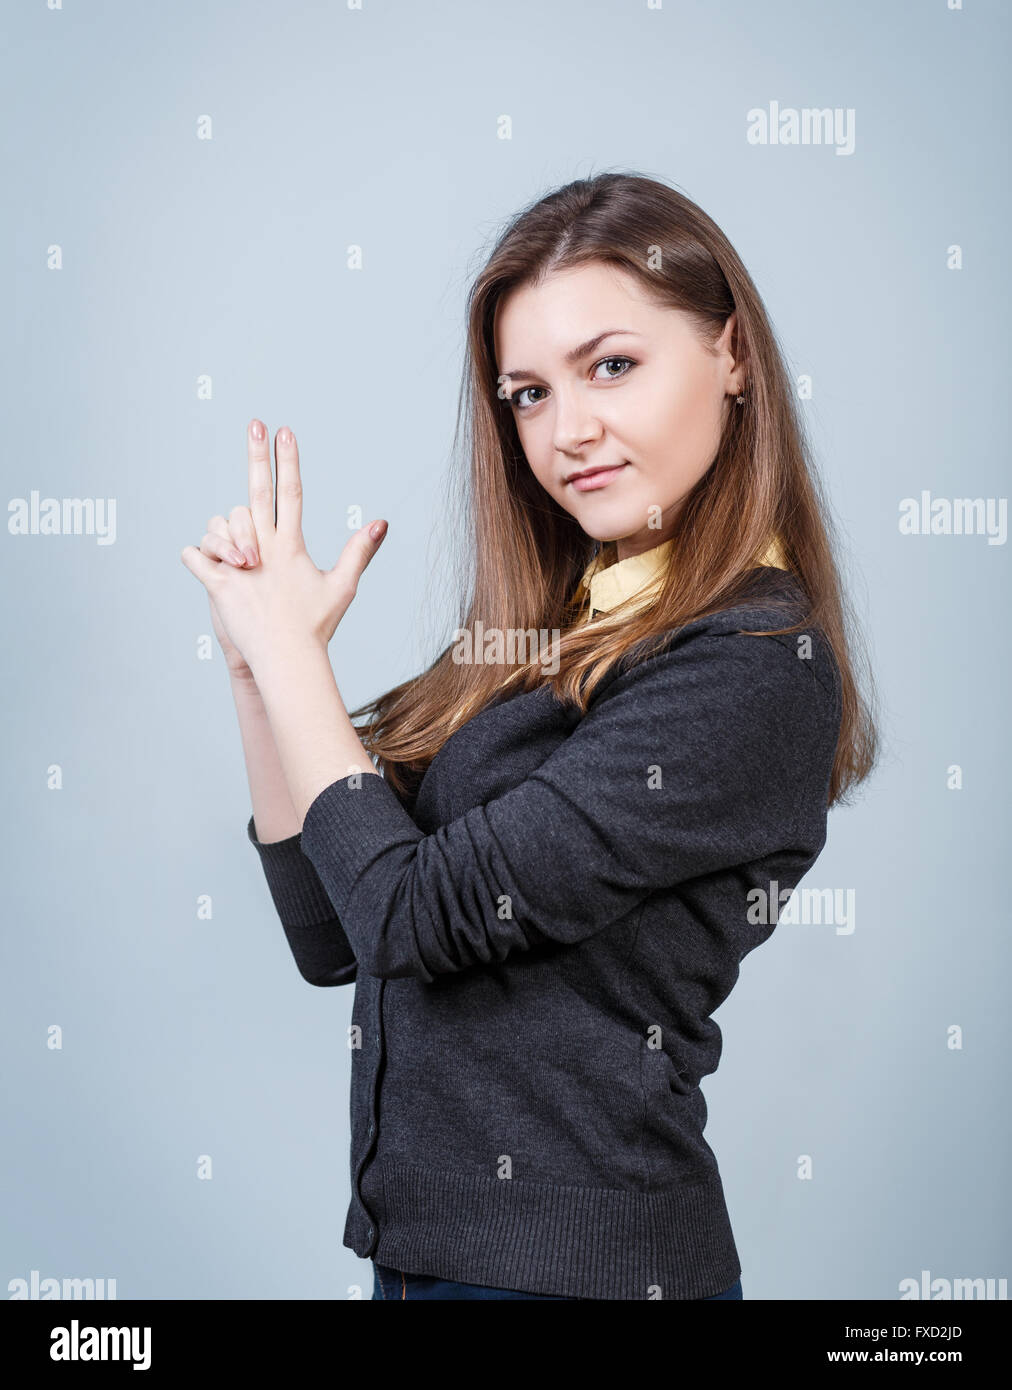 Young beautiful woman showing gun gesture Stock Photo